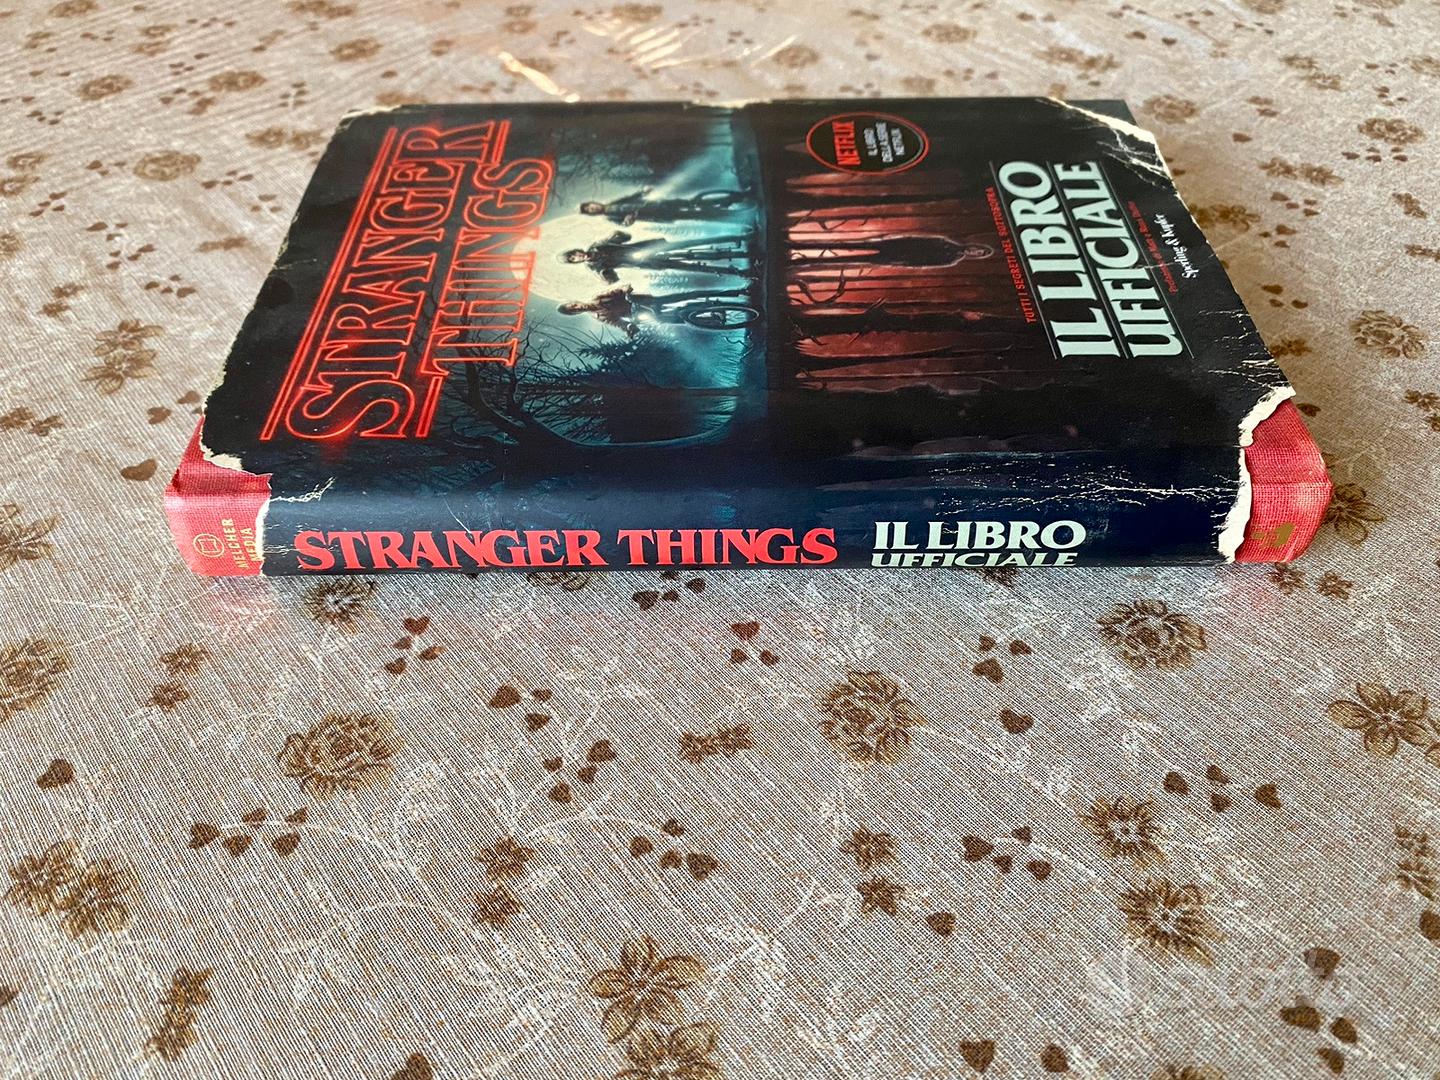 Stranger Things. Il Libro Ufficiale - Libri e Riviste In vendita a Napoli